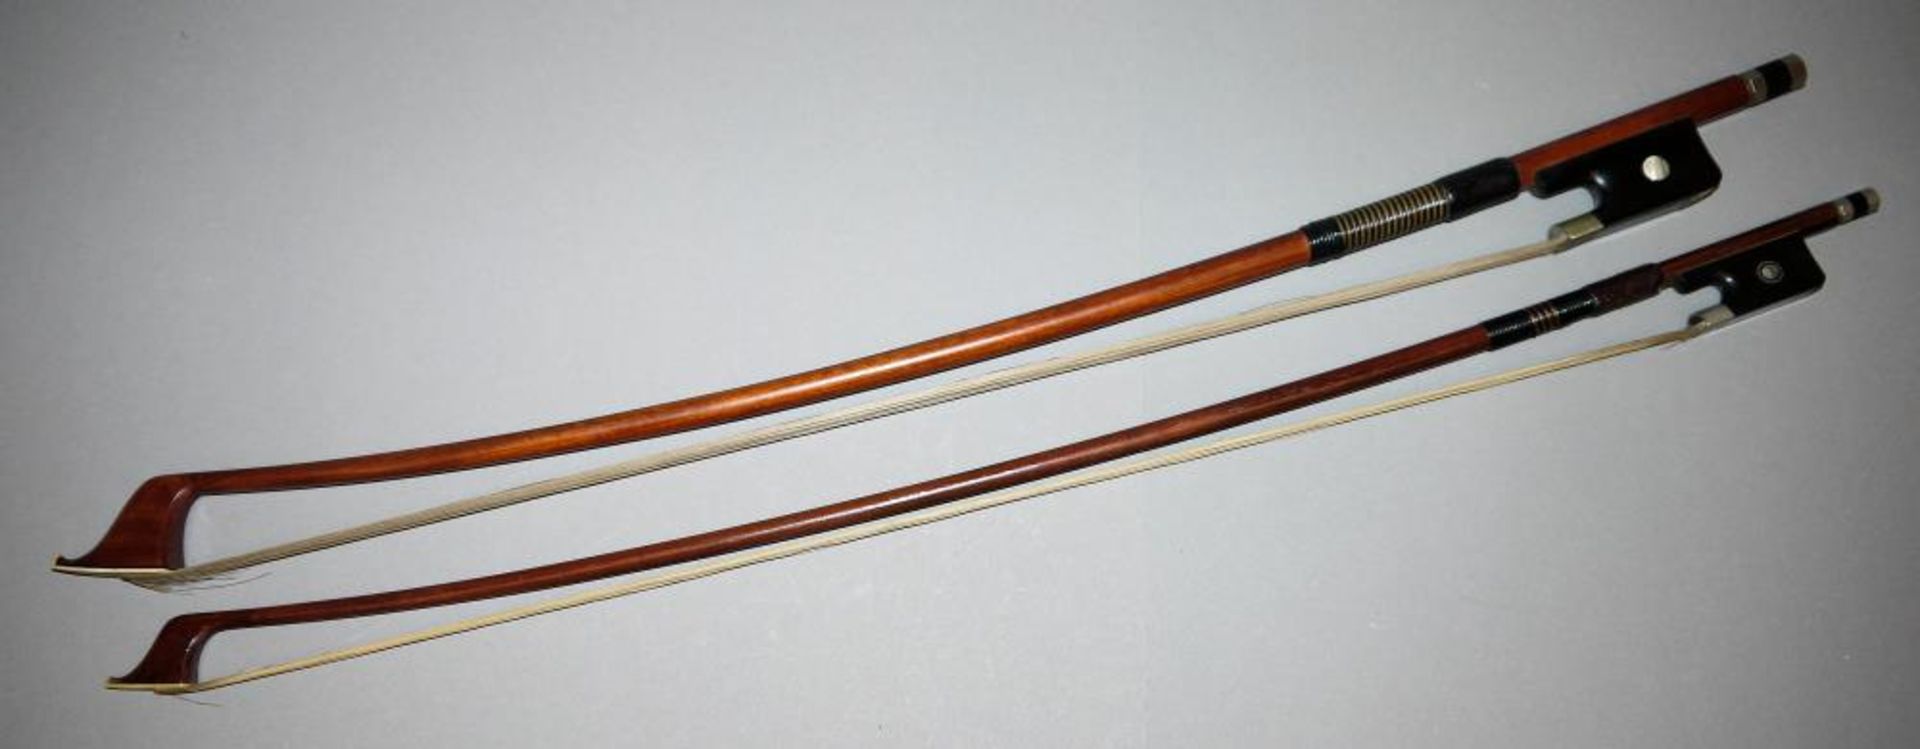 Zwei Cello-Bögen, einmal Roderich Paesold Zwei Cello-Bögen, Brasilholz, 64,5/ 68 cm, einmal signiert - Bild 2 aus 2